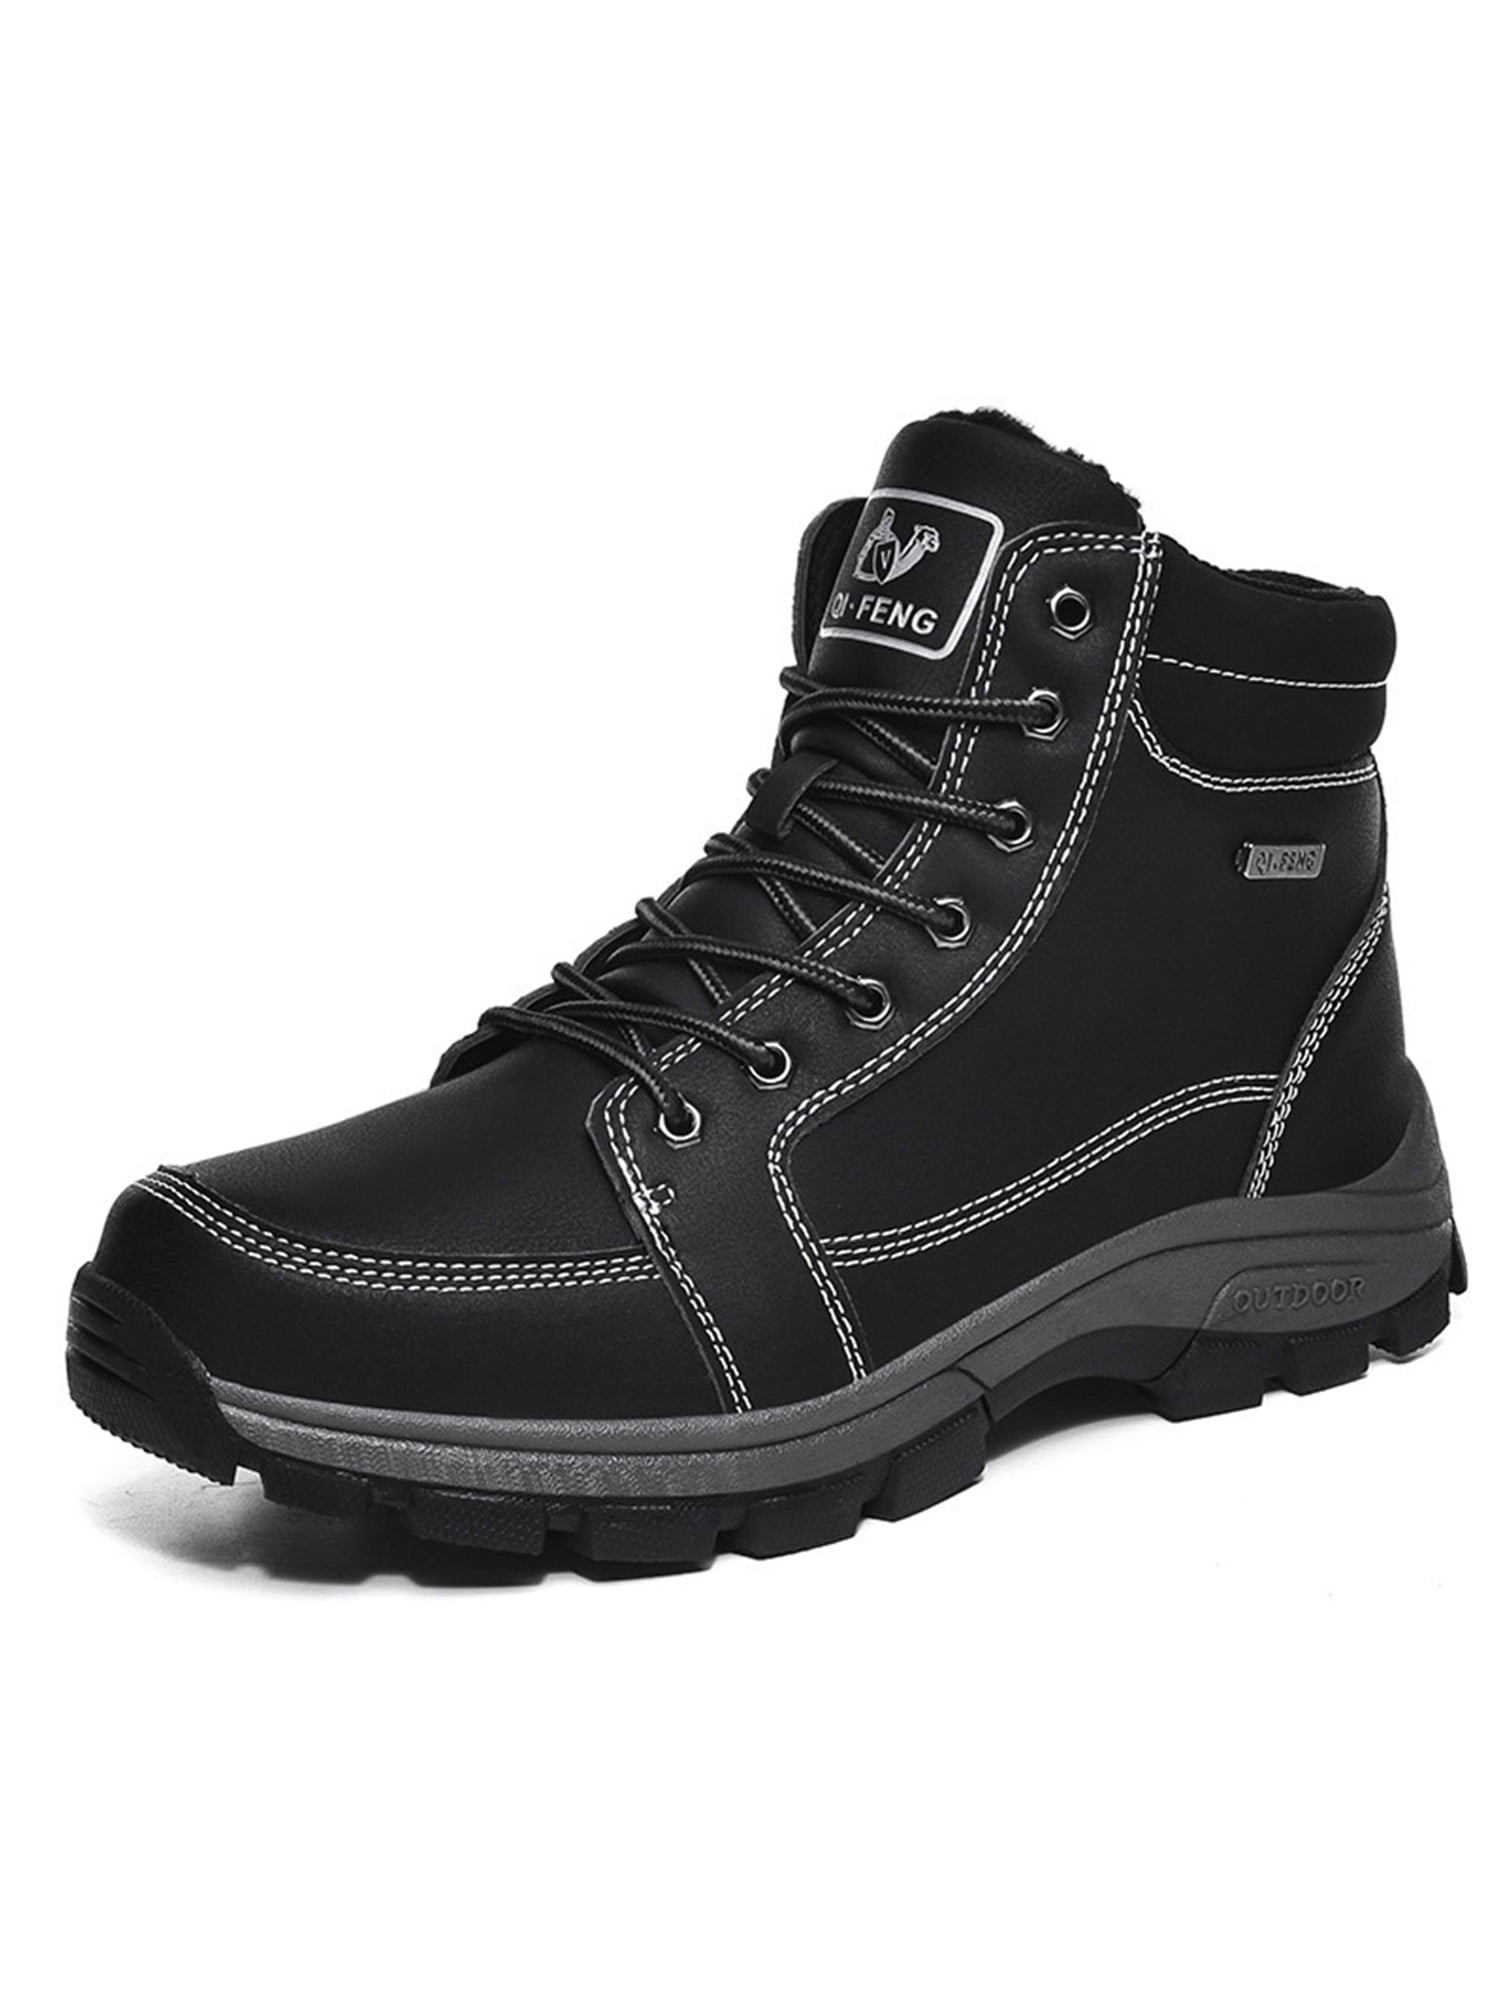 Mens Work Boots Safety Shoes Steel Toe Cap Waterproof Sneakers Outdoor Trekking 